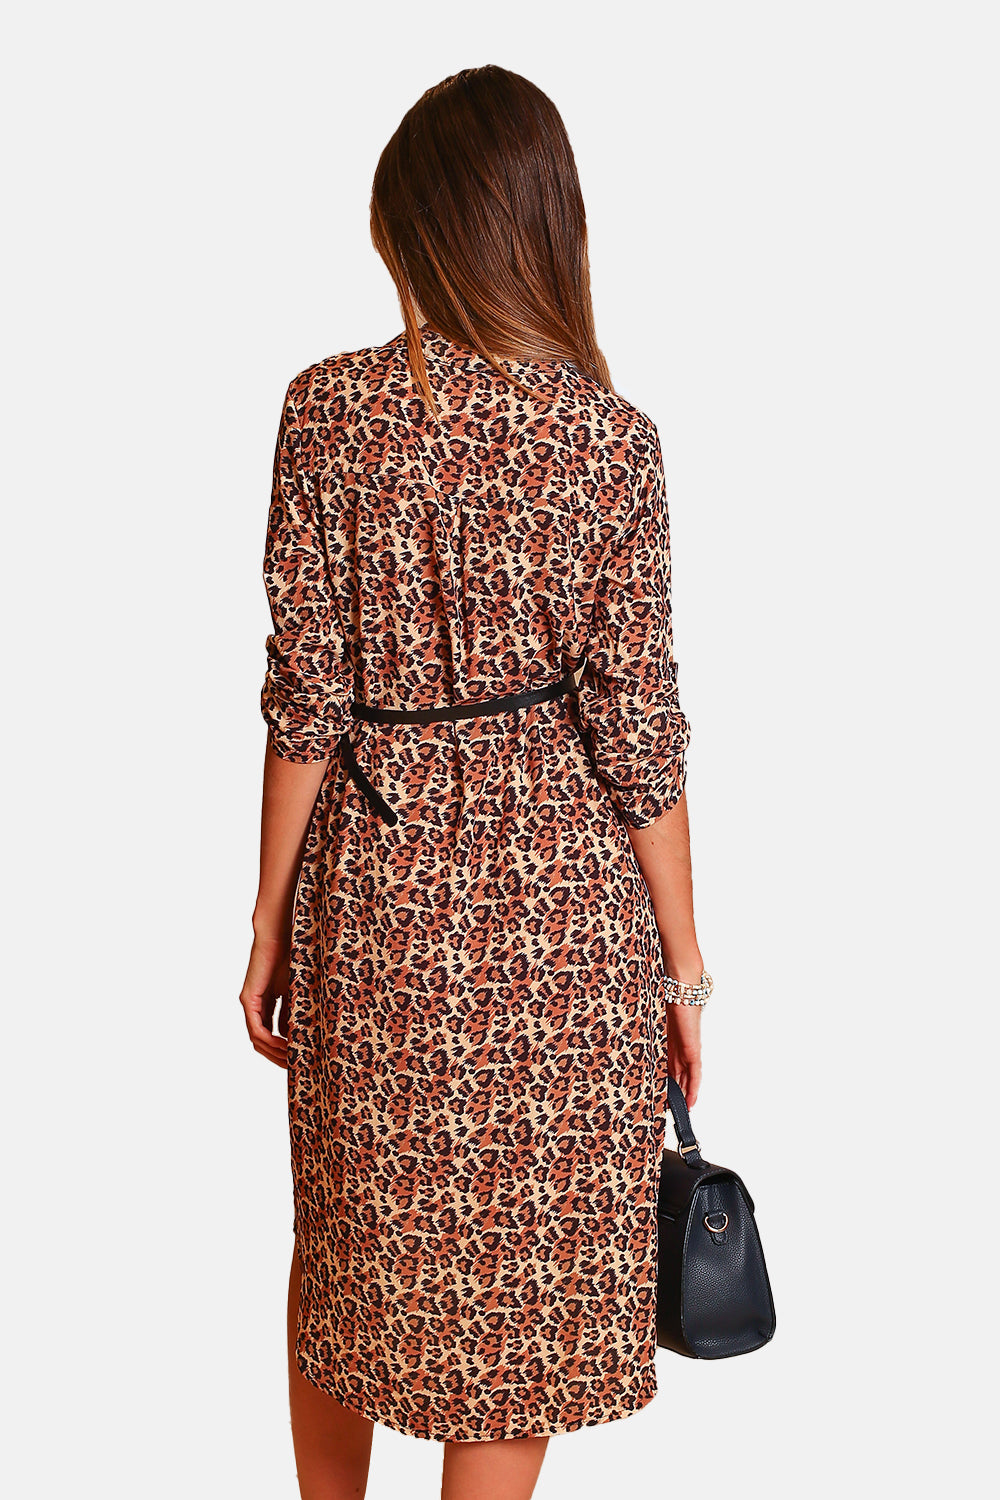 Leopard Print Dress Tunisian collar long sleeves fancy belt